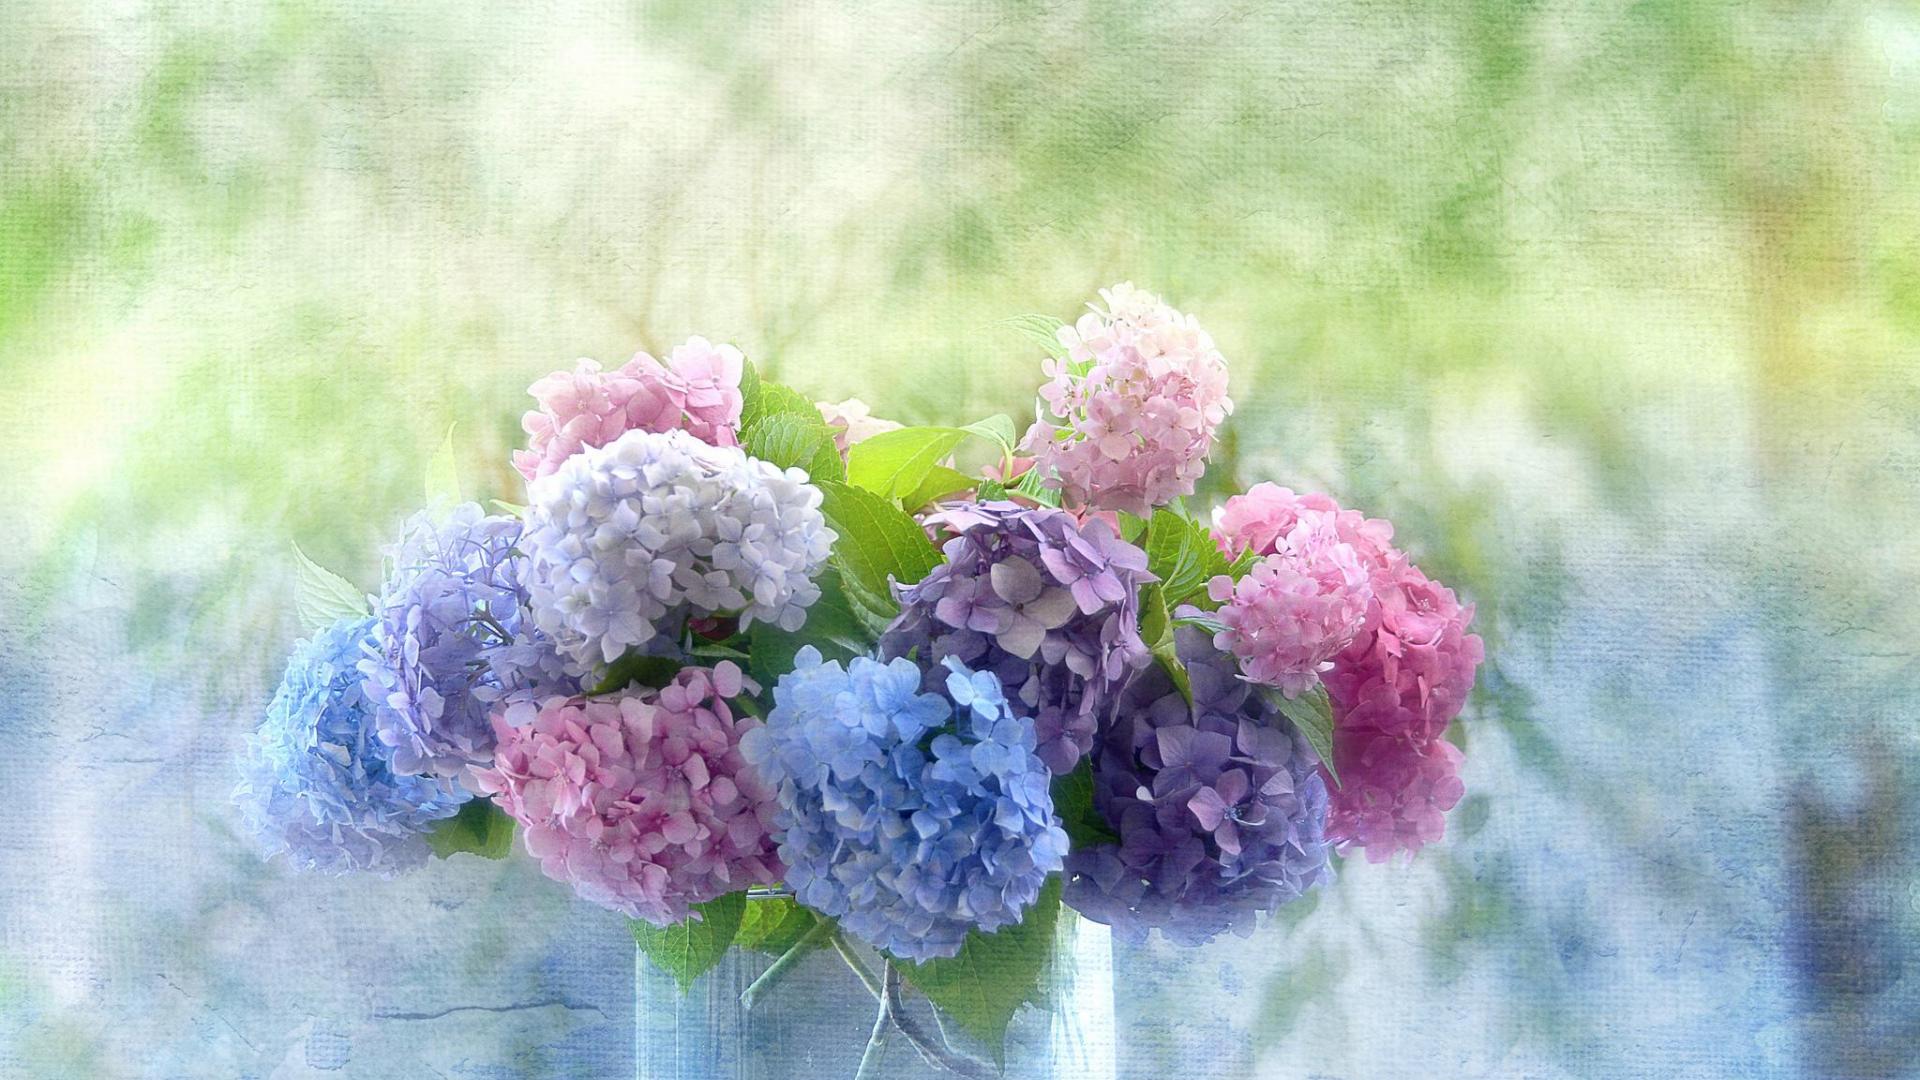 Khung cảnh hoa cẩm tú cầu sẽ khiến bạn mê mẩn bởi sự huyền bí màu xanh dịu dàng hoặc những sắc tím lãng mạn. Hãy tìm hiểu về cách tạo ra những bức hình tuyệt đẹp với nền hoa cẩm tú cầu này.